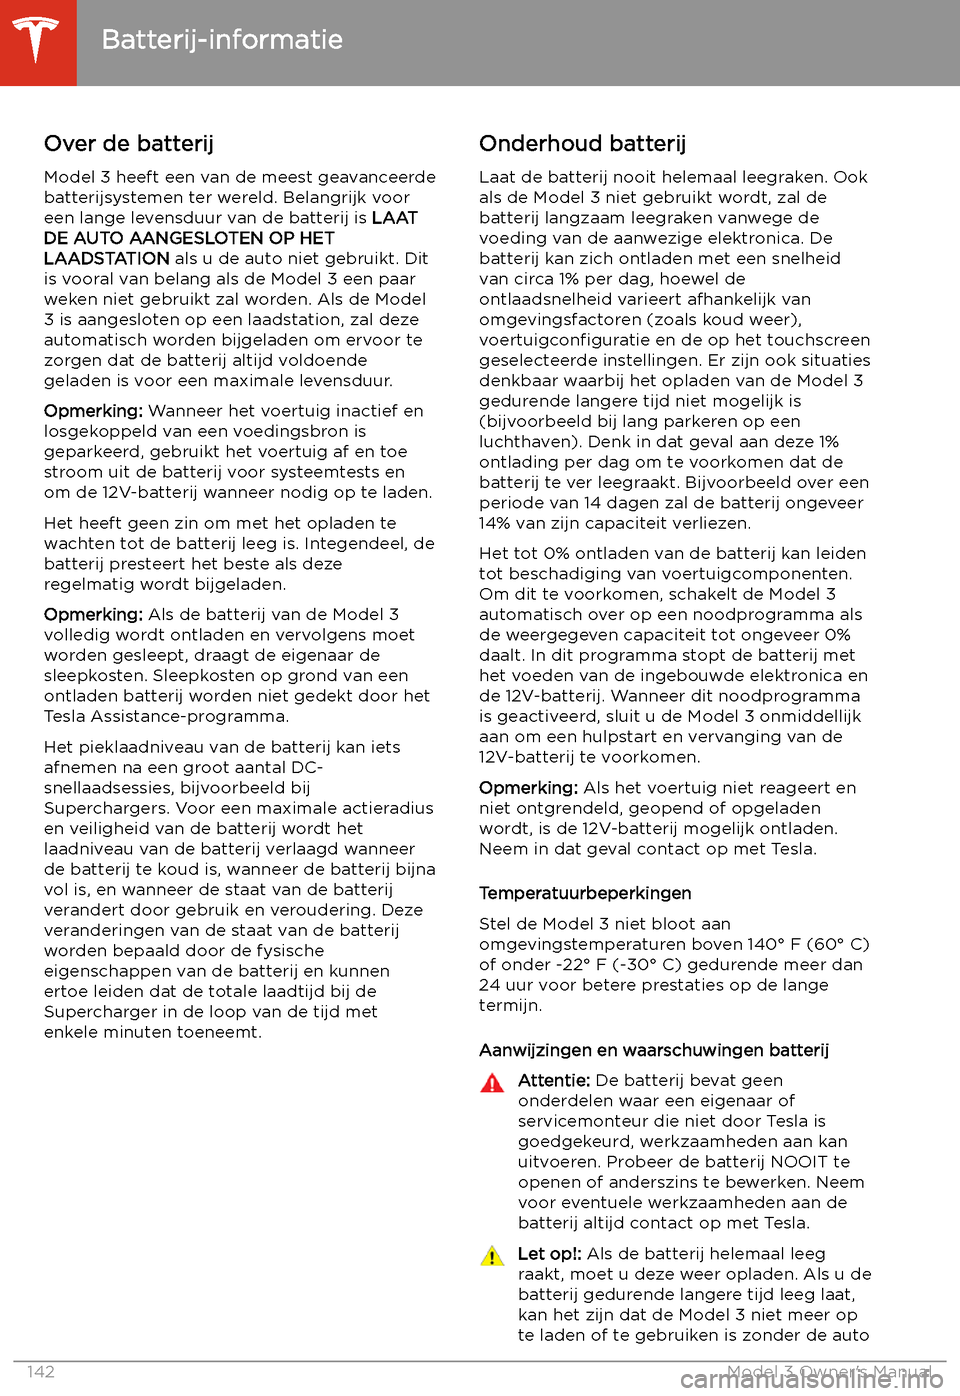 TESLA MODEL 3 2019  Handleiding (in Dutch) Batterij-informatie
Over de batterij
Model 3 heeft een van de meest geavanceerde
batterijsystemen ter wereld. Belangrijk voor
een lange levensduur van de batterij is  LAAT
DE AUTO AANGESLOTEN OP HET
L